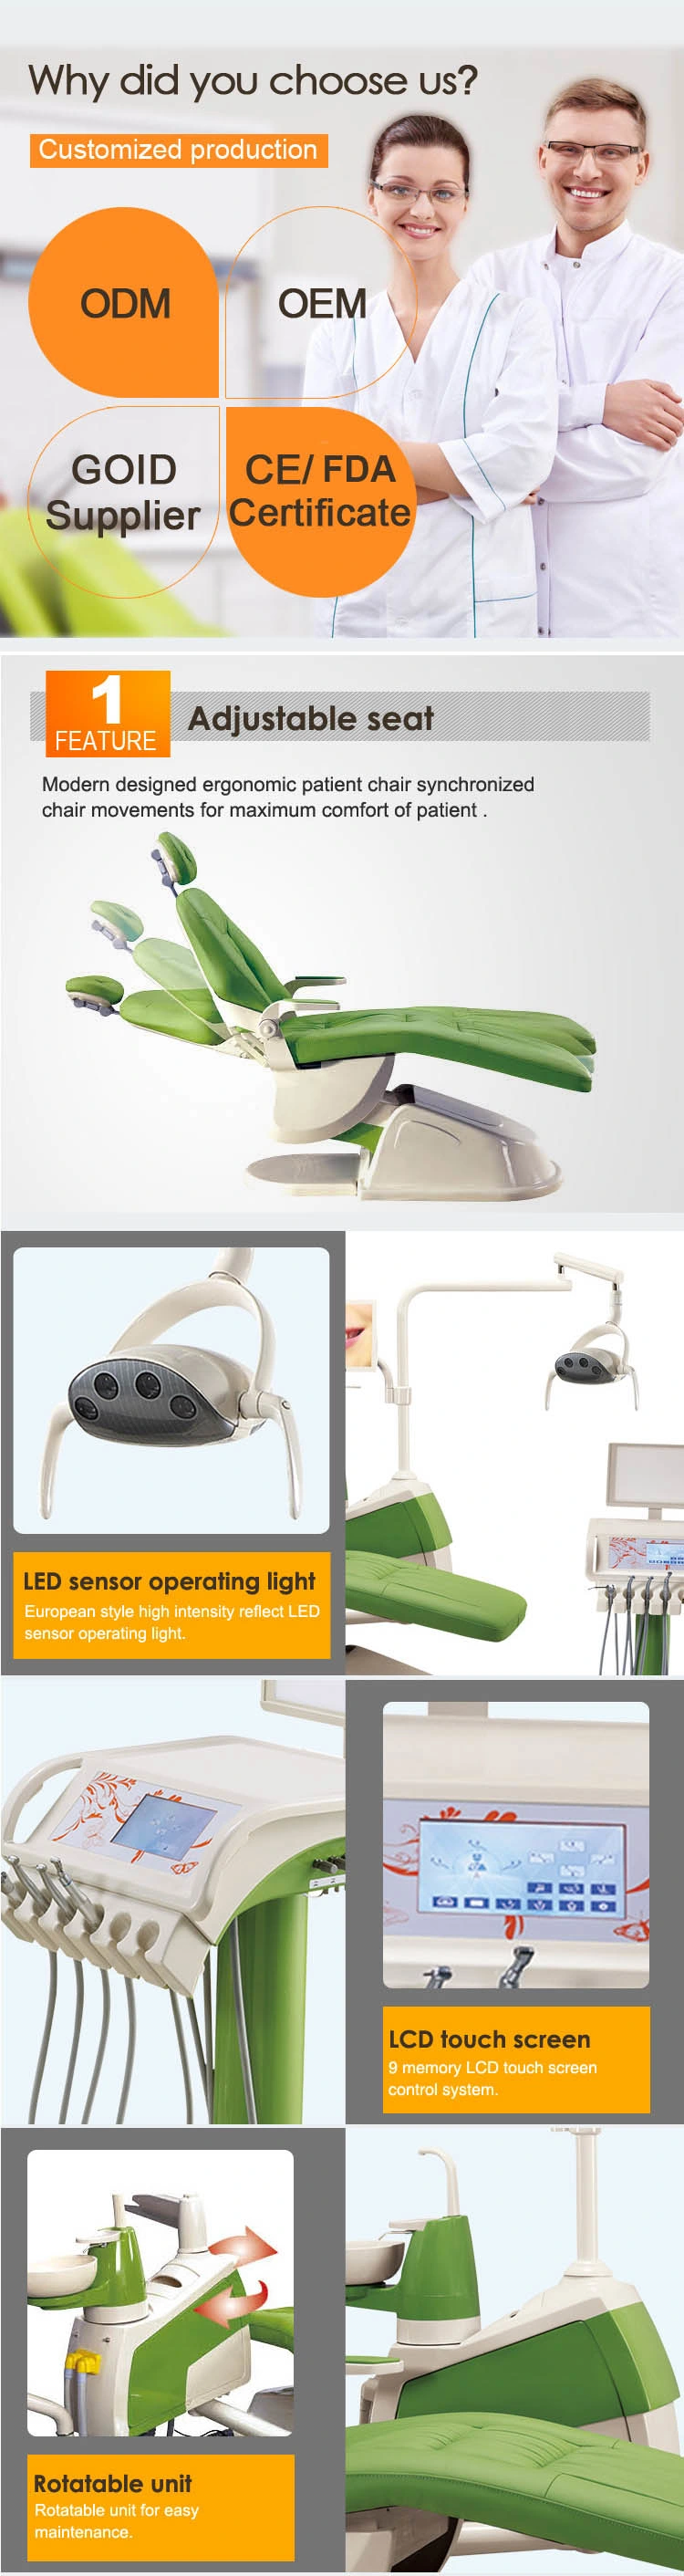 LED Sensor Light ISO Approved Dental Chair Summit Dental Chairs/Dental Chair Manufacturers in India/Dental Stool with Armrest